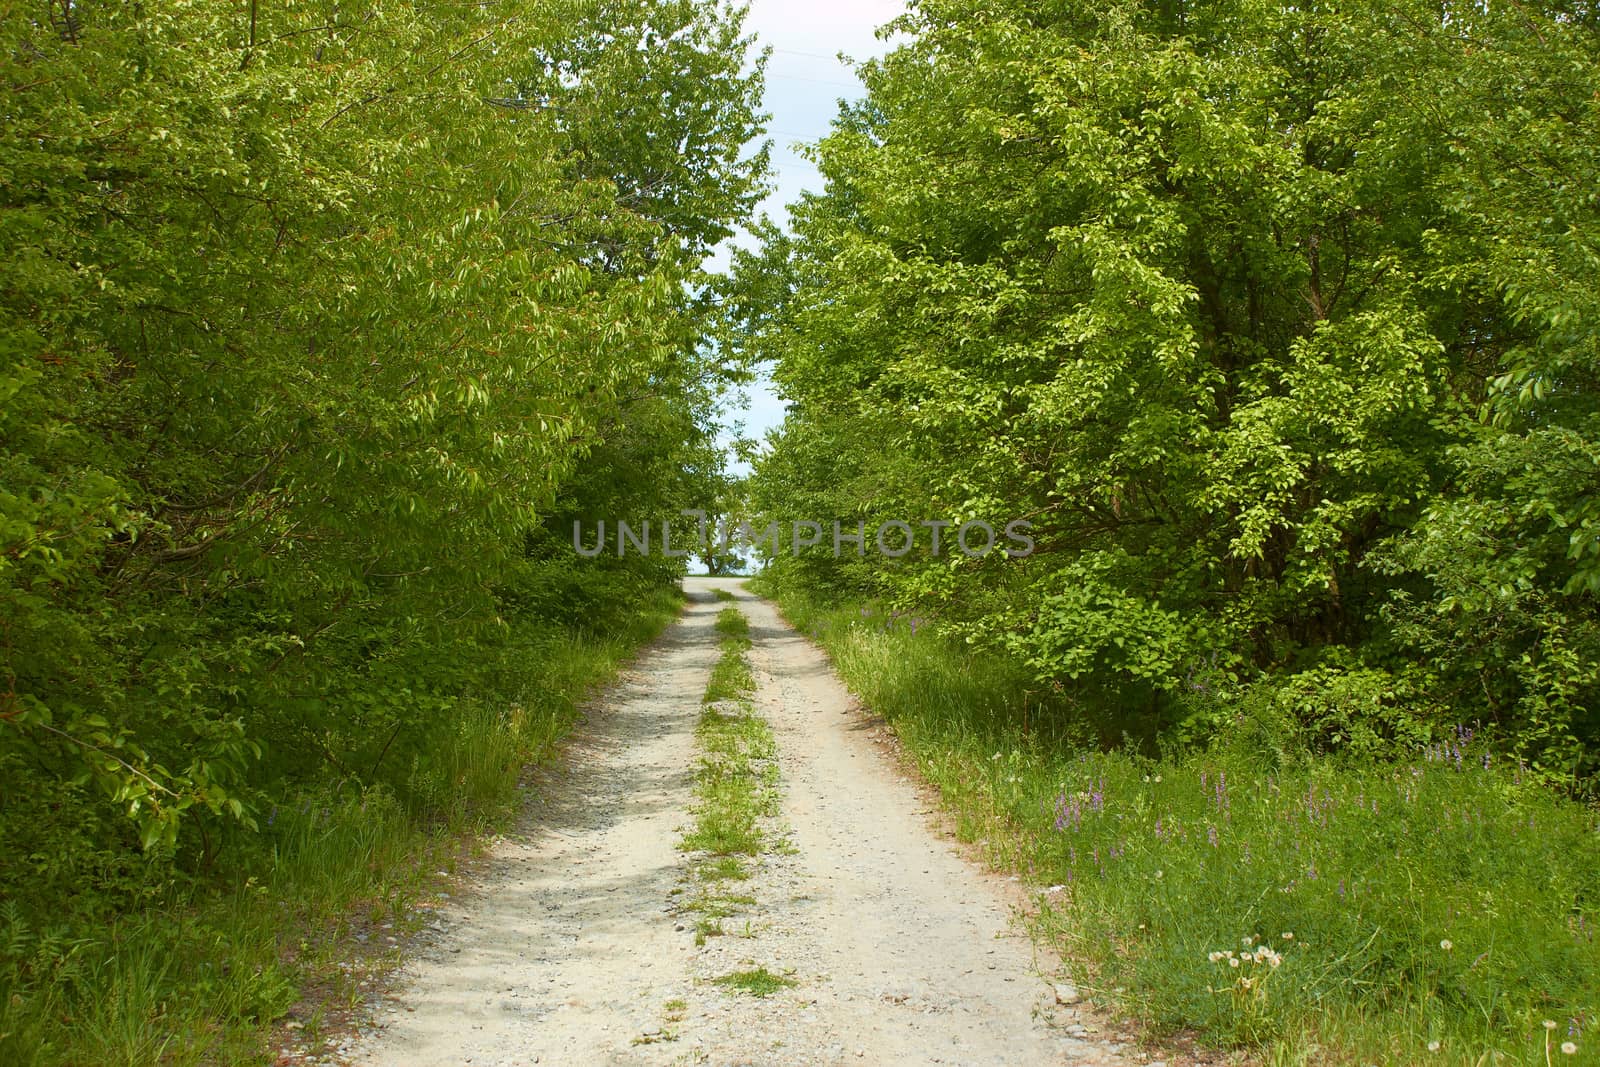 Rural road between trees by qiiip